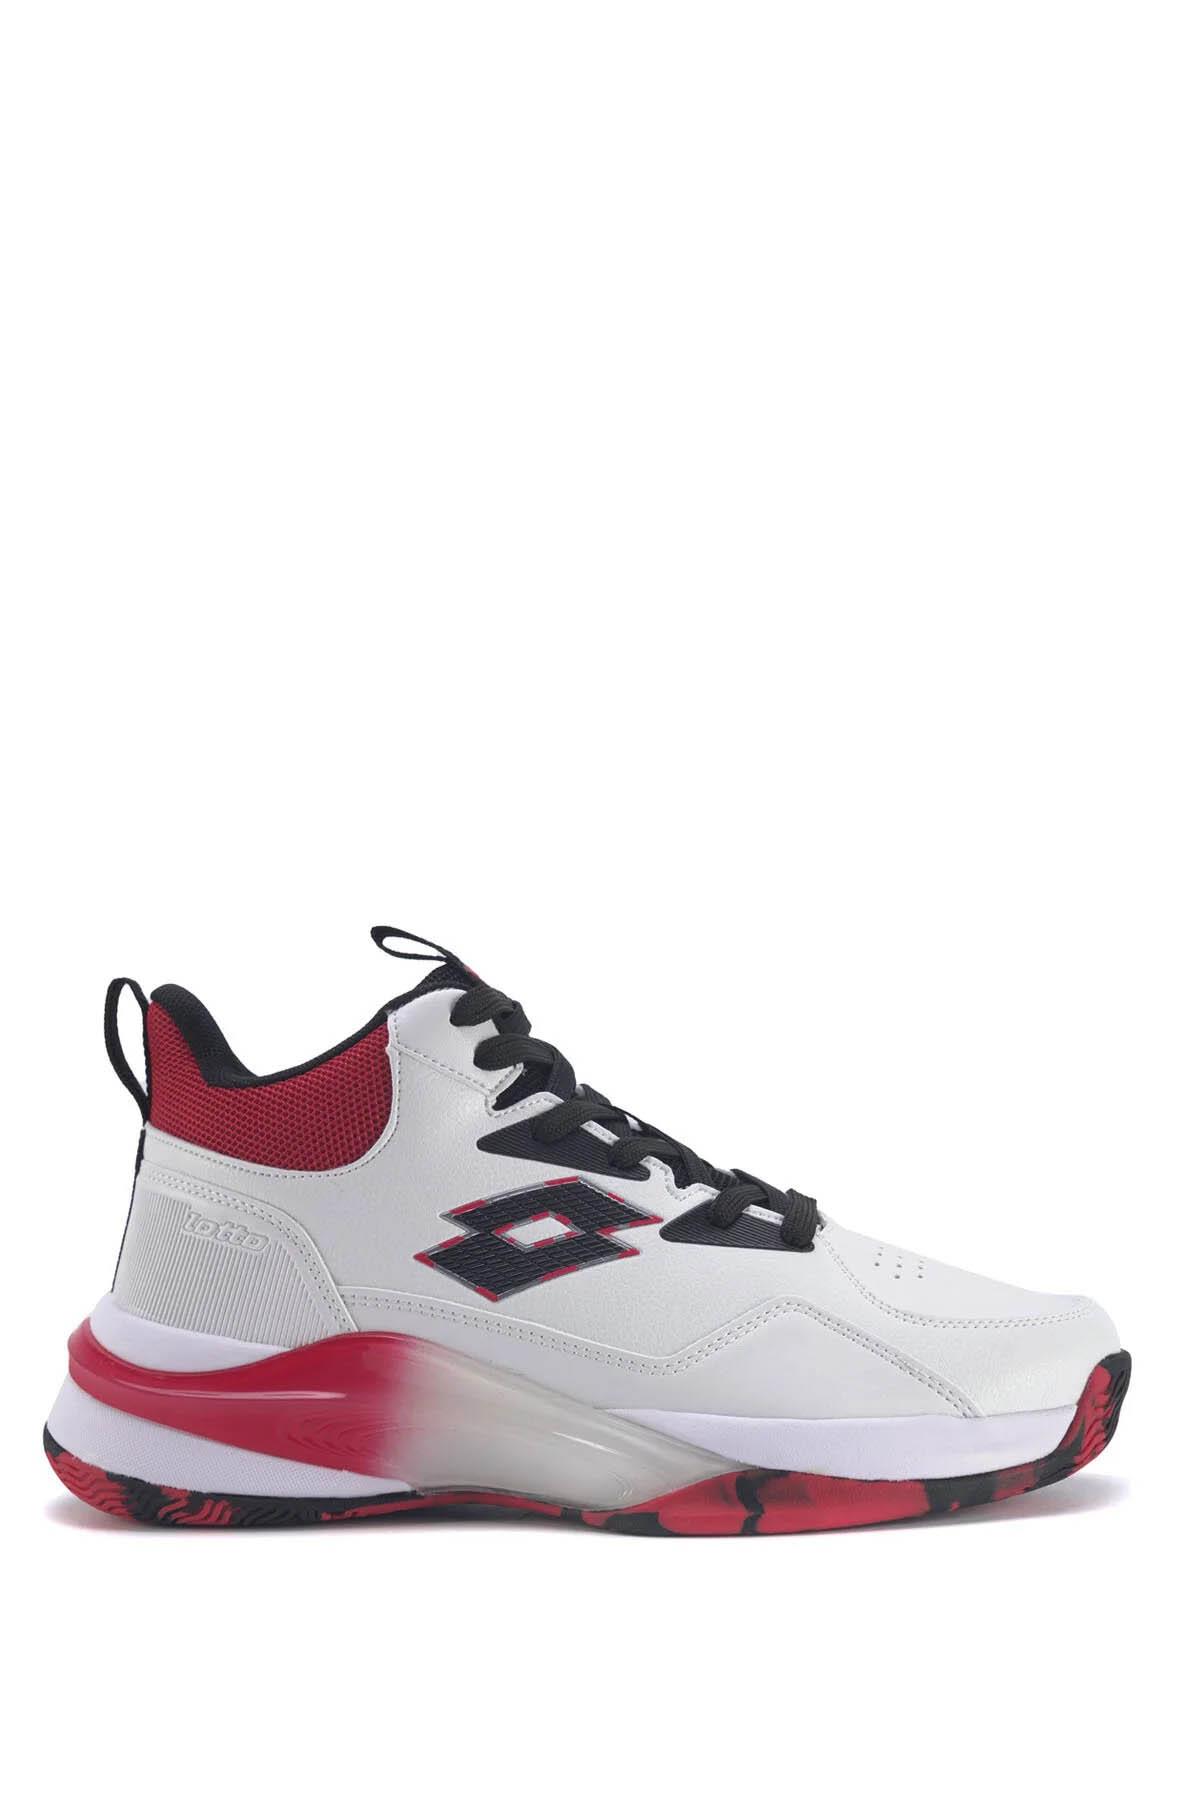 Lotto Erkek Basketbol Ayakkabısı Beyaz-Kırmızı 101267912 Hıgher 3Fx